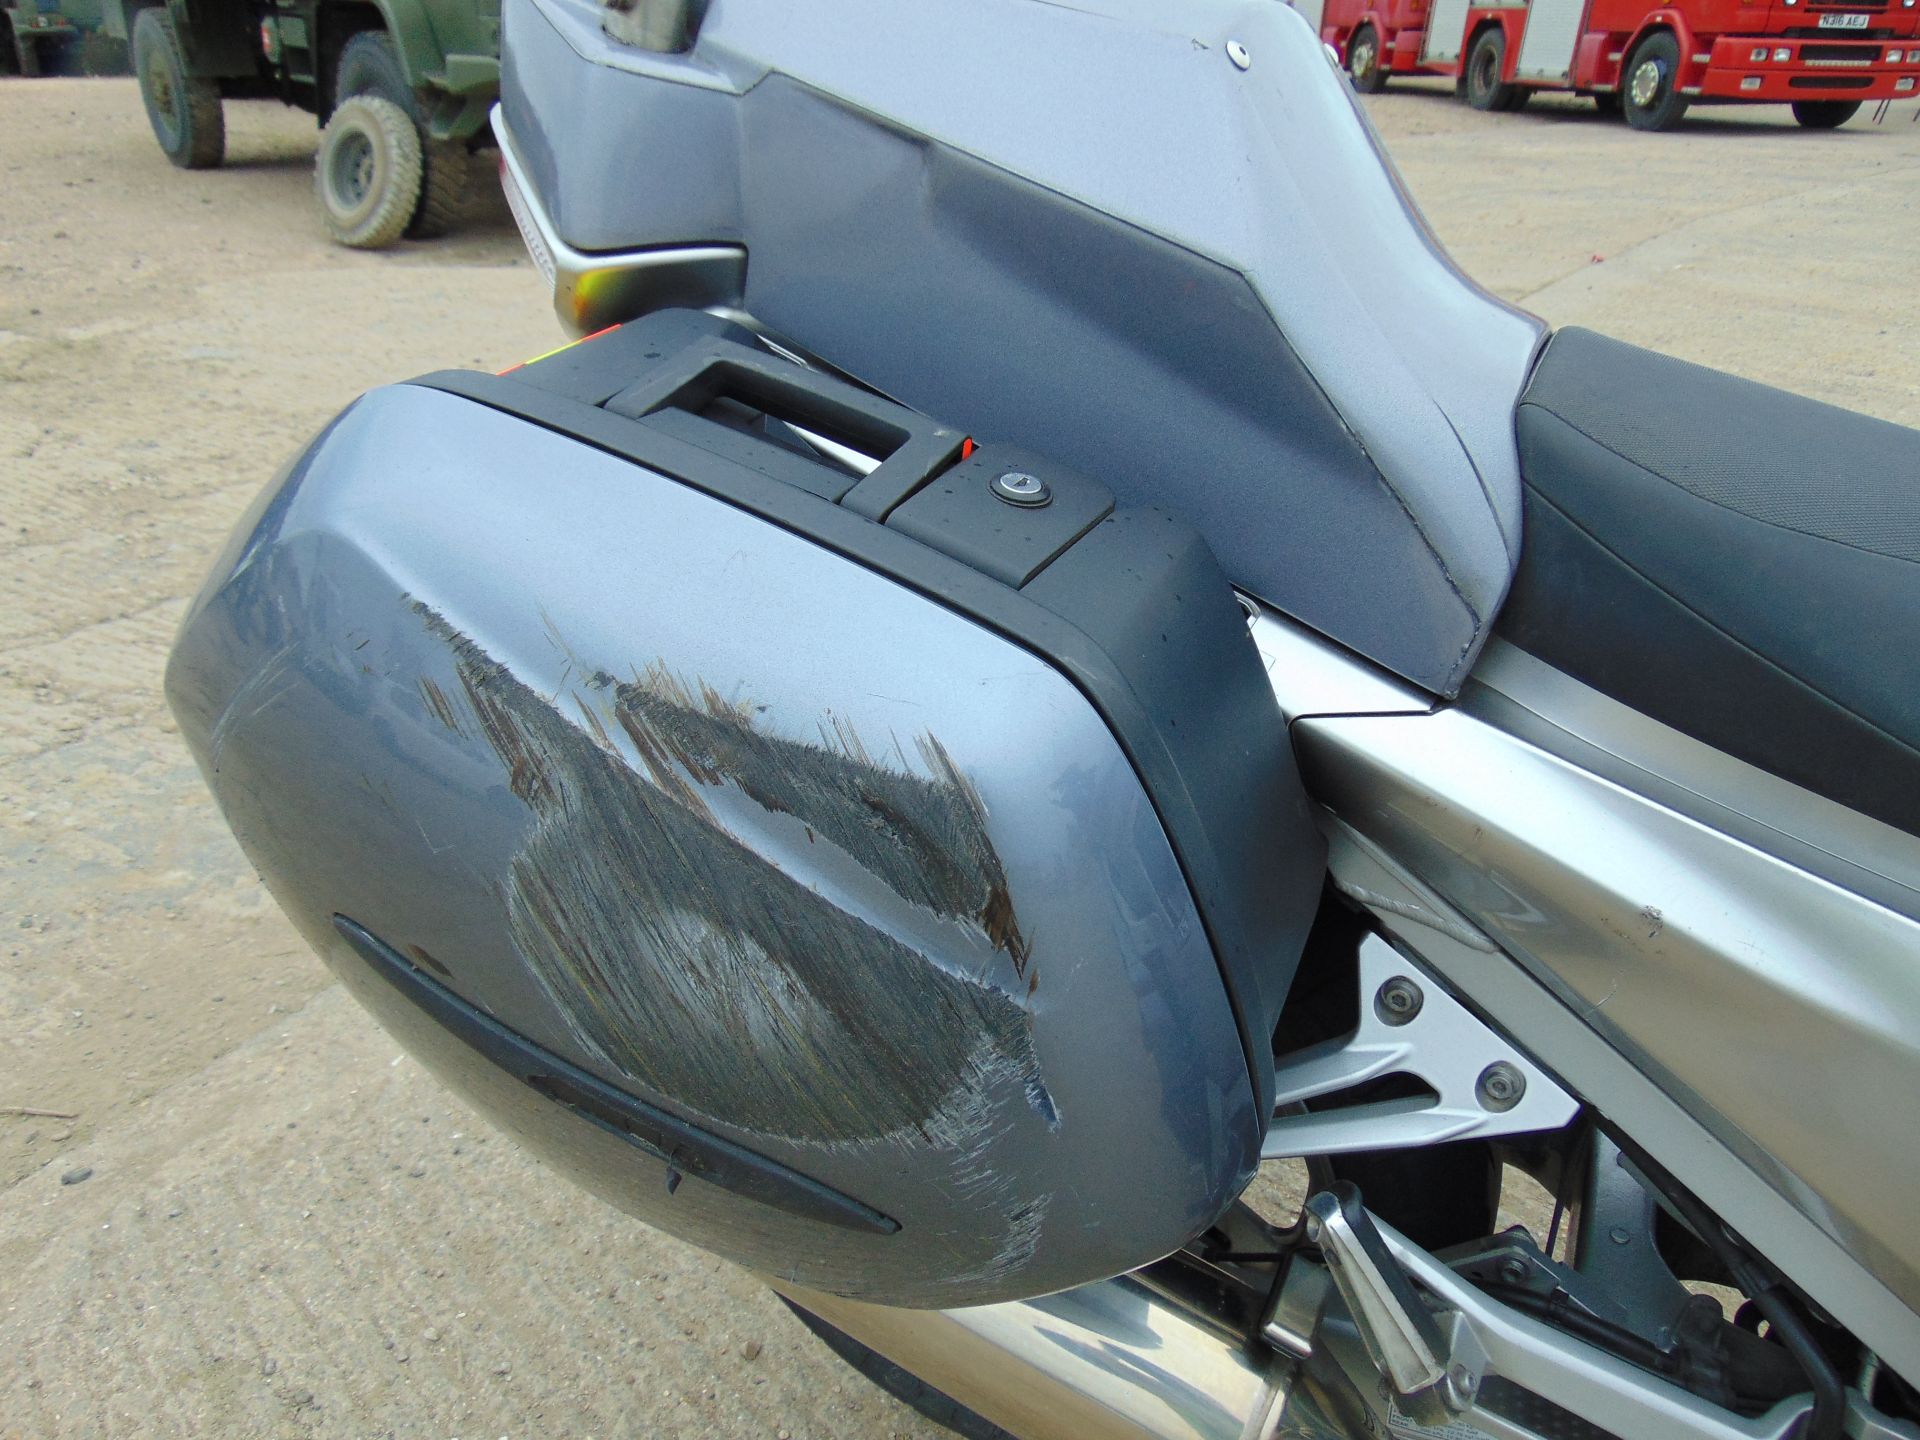 2008 Yamaha FJR1300 Motorbike - Image 11 of 15